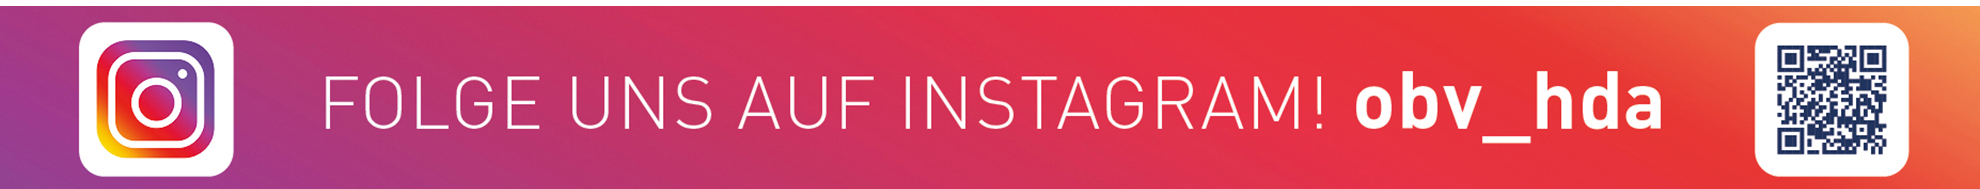 Logo von Instagram mit dem Slogan "Folge uns auf Instagram! obv_hda" mit zusätzlichem QR-Code